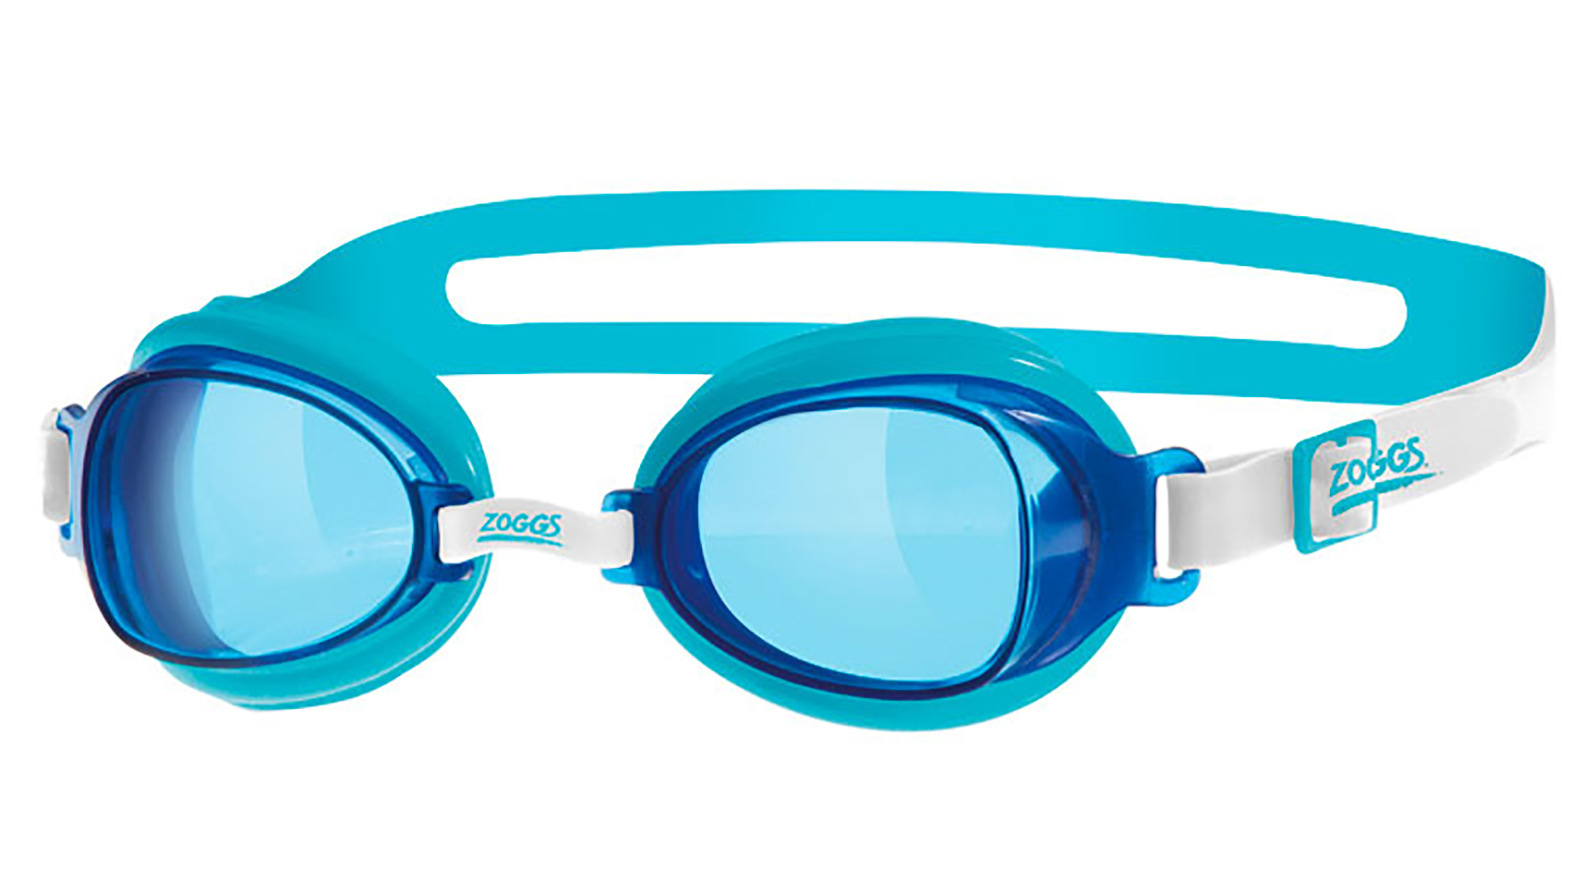 Очки для плавания ZOGGS Otter, Blue/White очки для плавания zoggs little ripper 0 6 лет blue green